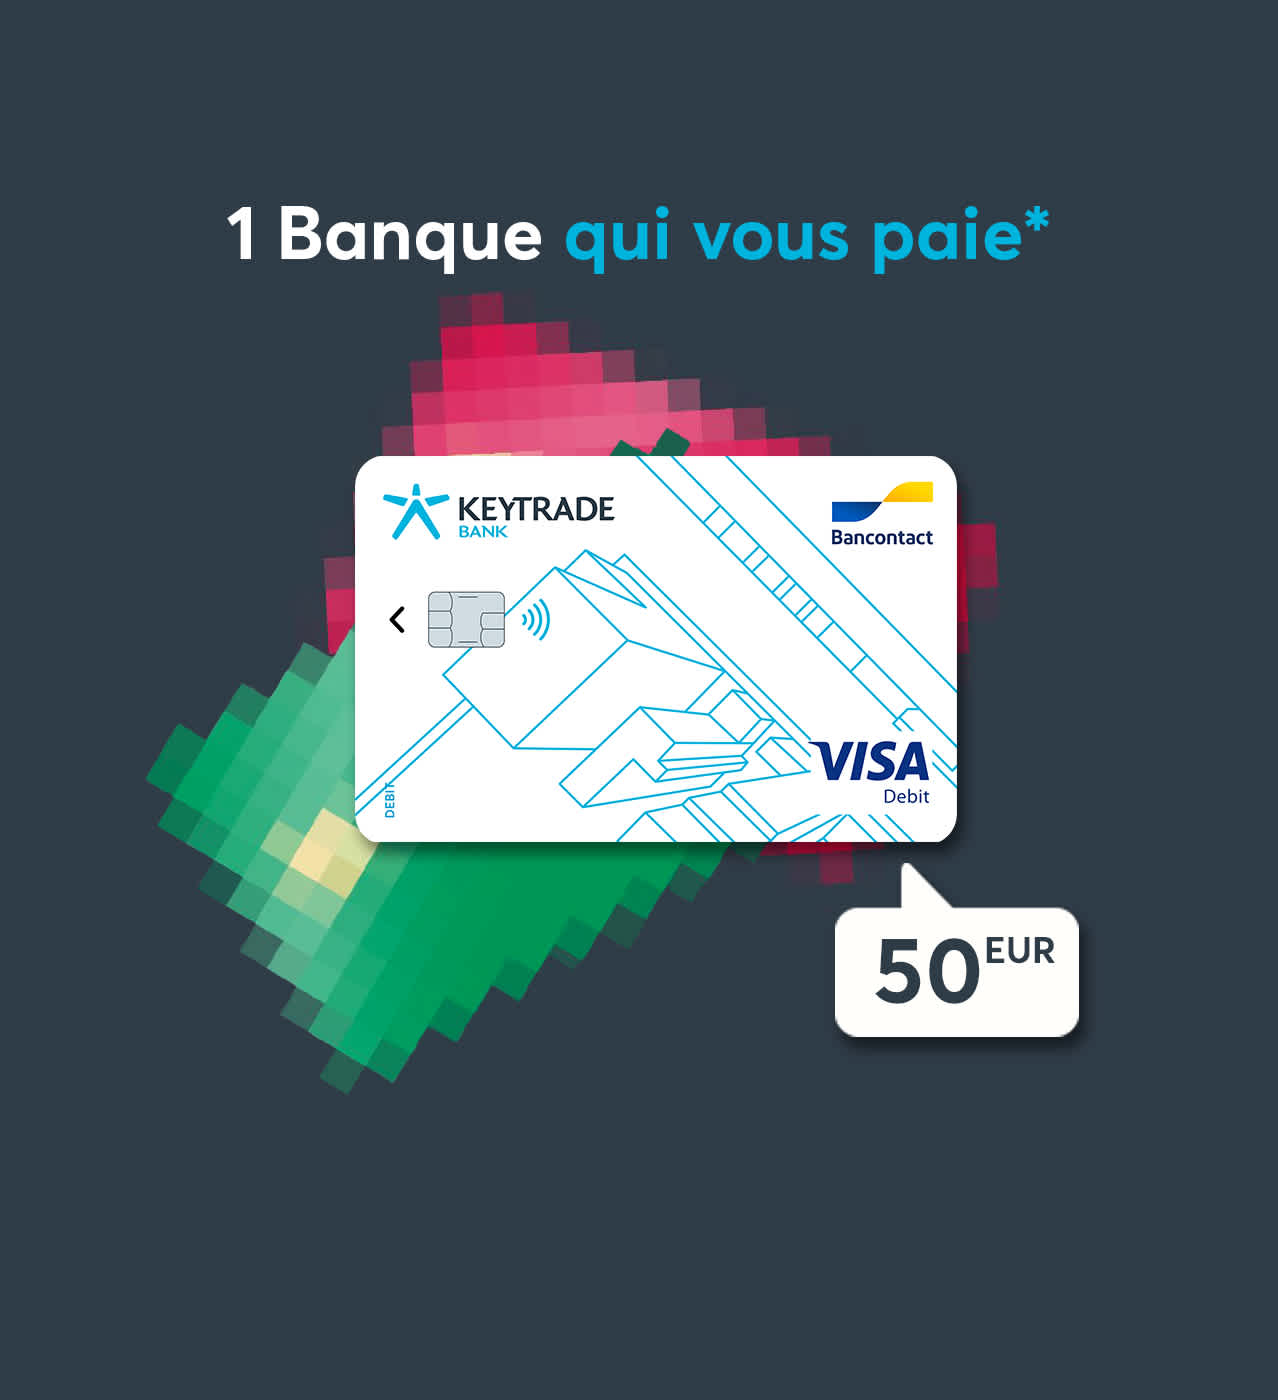 BanqueQuiVousPaye-50eur-fr